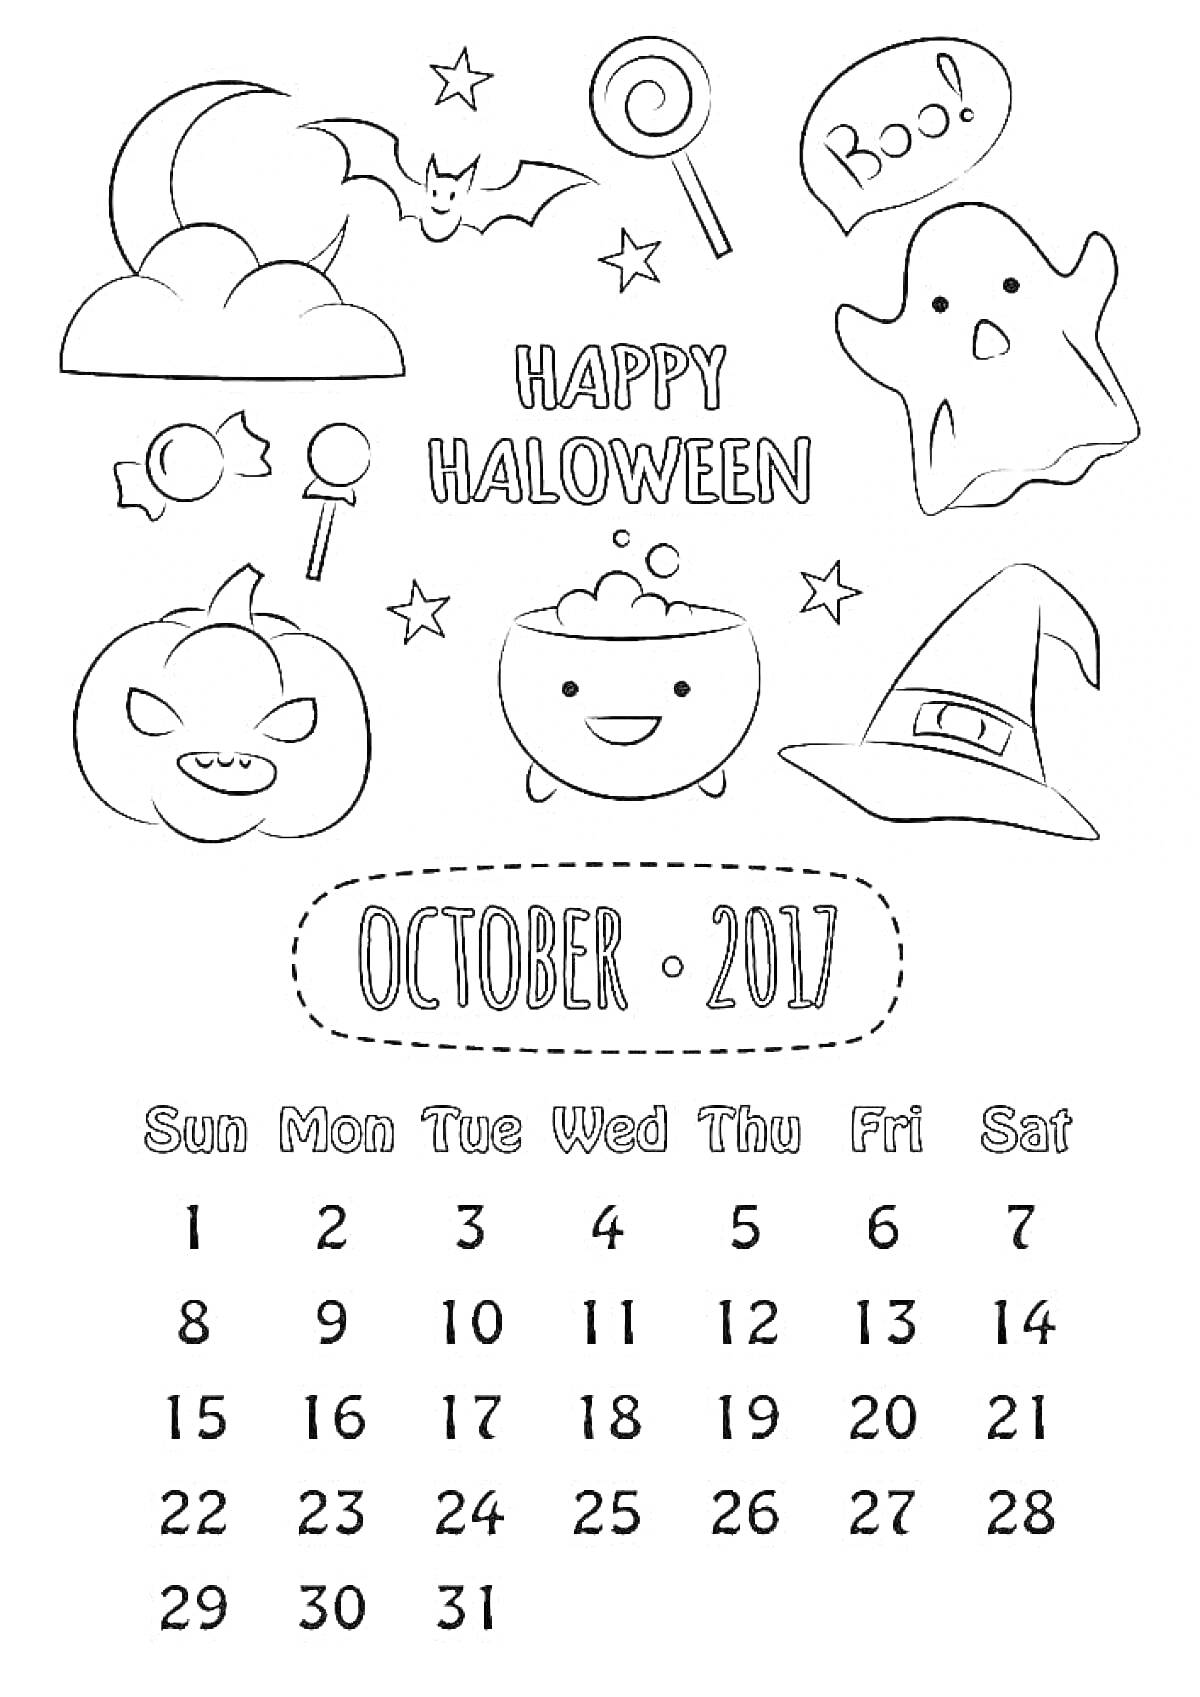 Календарь на октябрь 2017 года с элементами Хэллоуина: летучая мышь, ведьмин котел, шляпа ведьмы, привидение, надпись 'Boo!', тыква-фонарь, леденец на палочке, звезды, облако и конфеты.